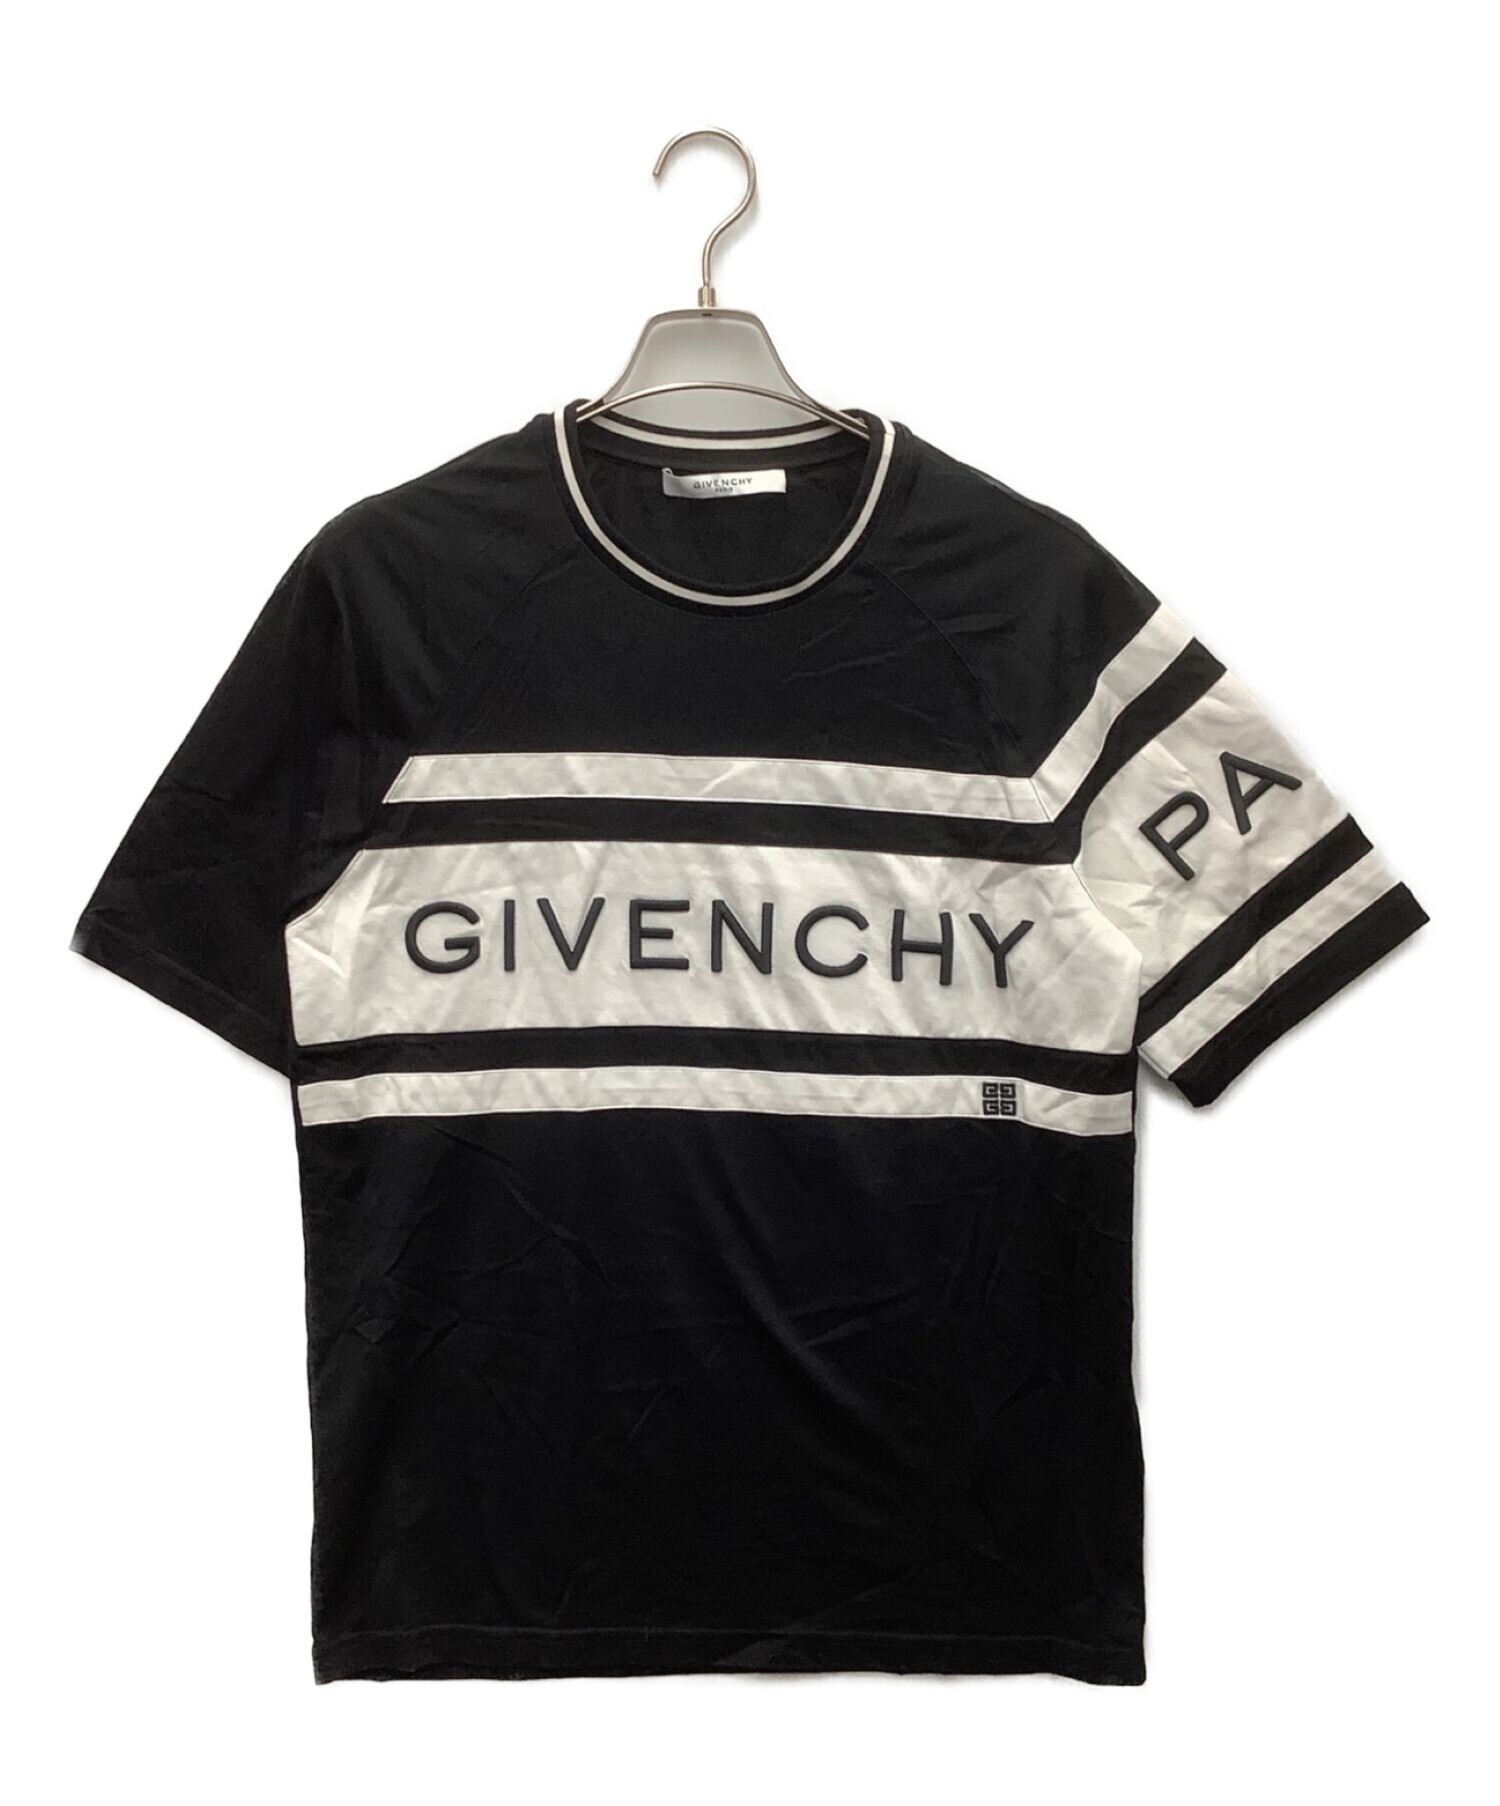 GIVENCHY (ジバンシィ) コントラストスリムTシャツ ブラック×ホワイト サイズ:M